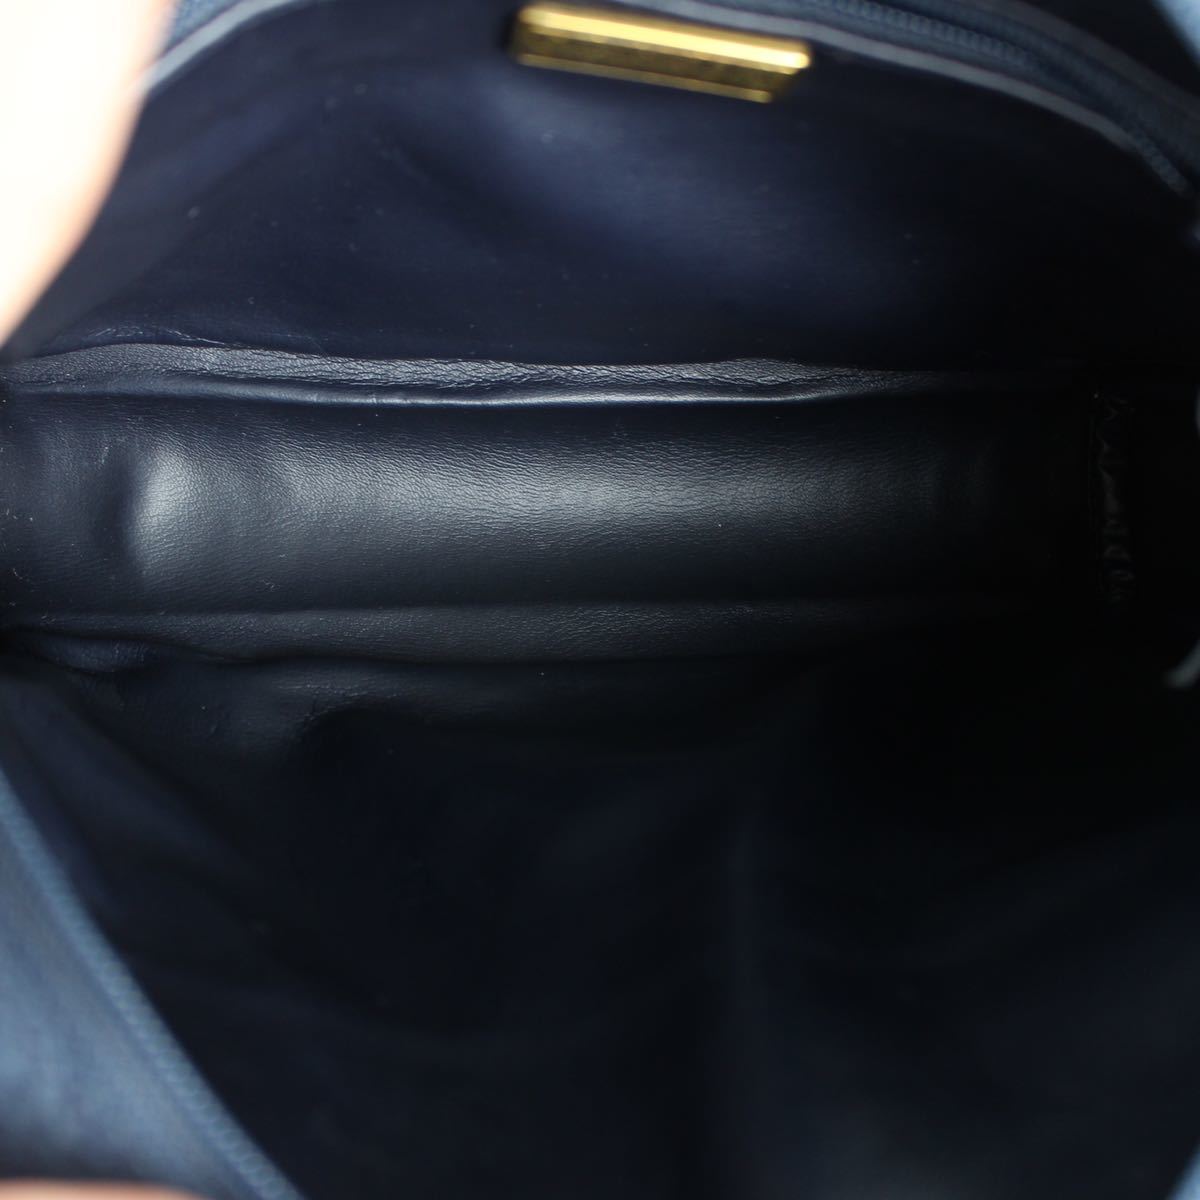 Christian Dior LOGO LEATHER SHOULDER BAG MADE IN FRANCE